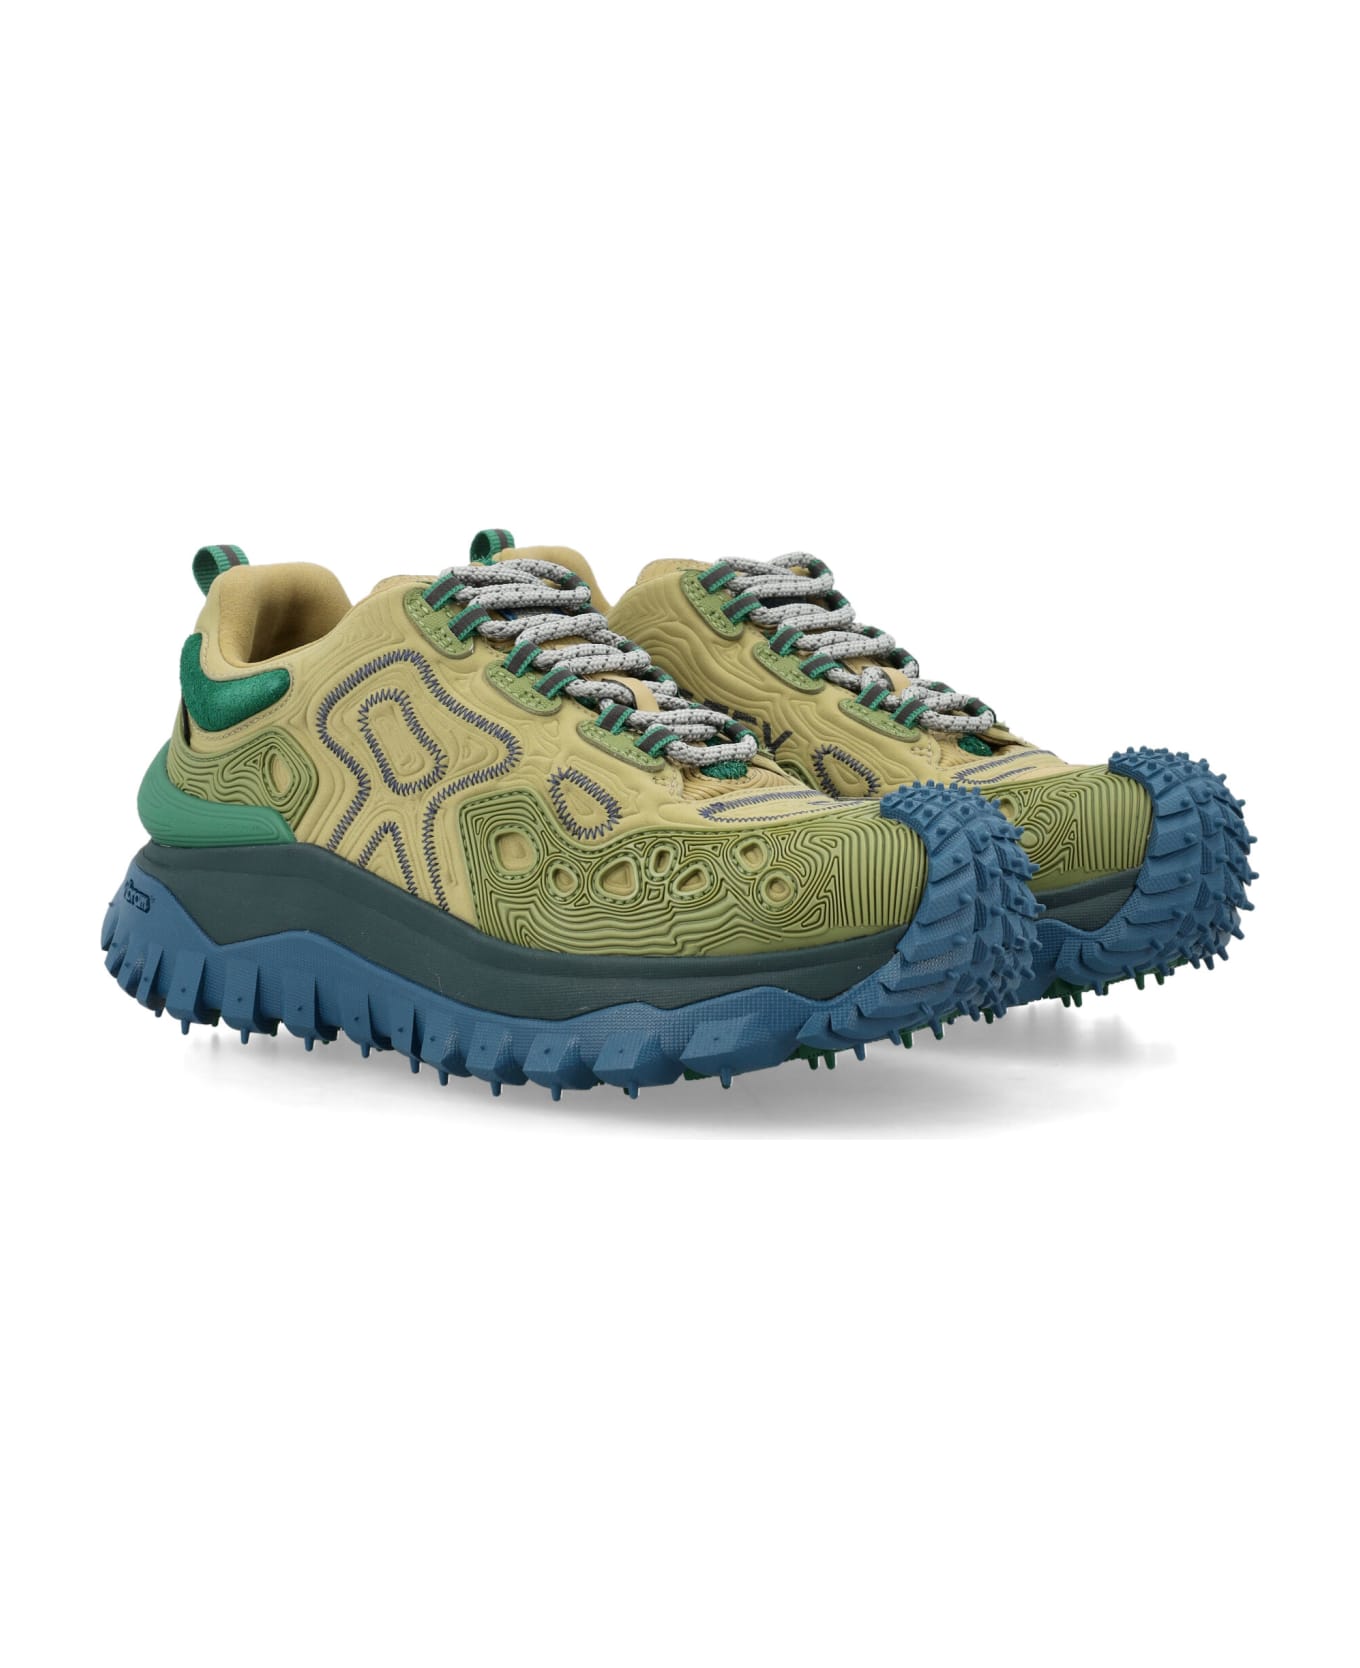 Moncler Genius Trailgrip Grain Sneakers - GREEN